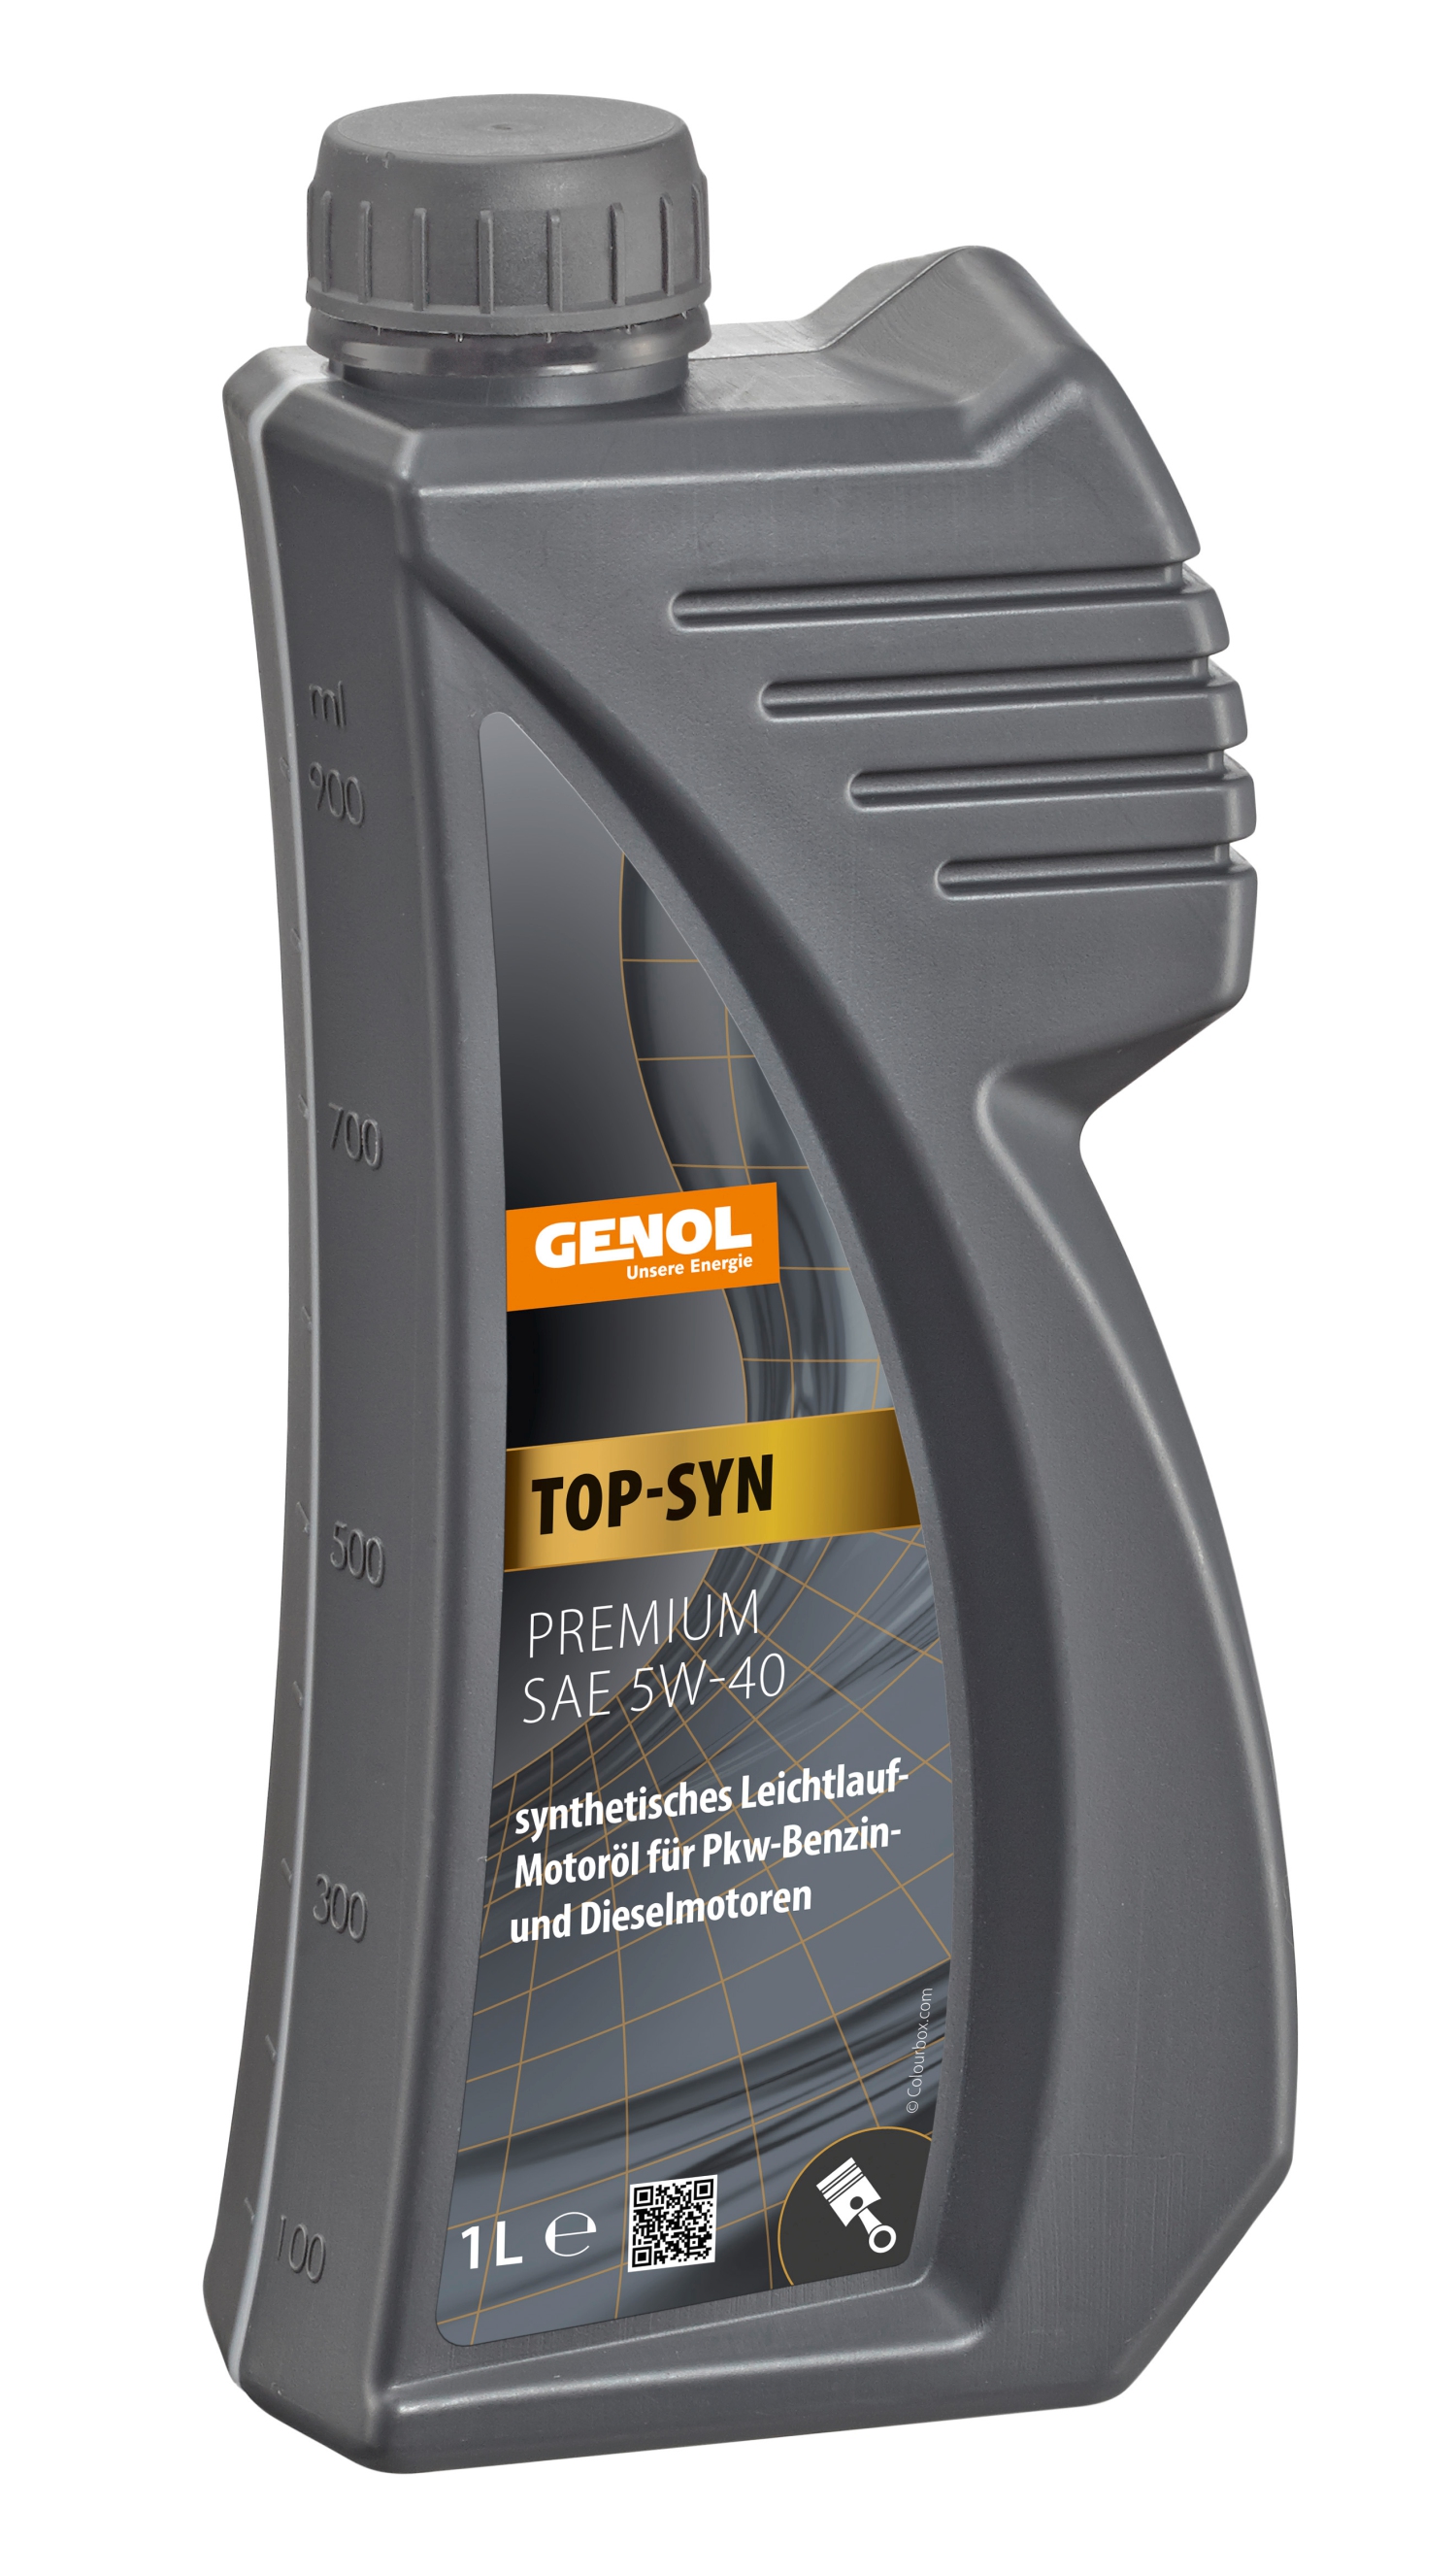 GENOL Top-Syn Premium 5W-40 1L, Motoröl